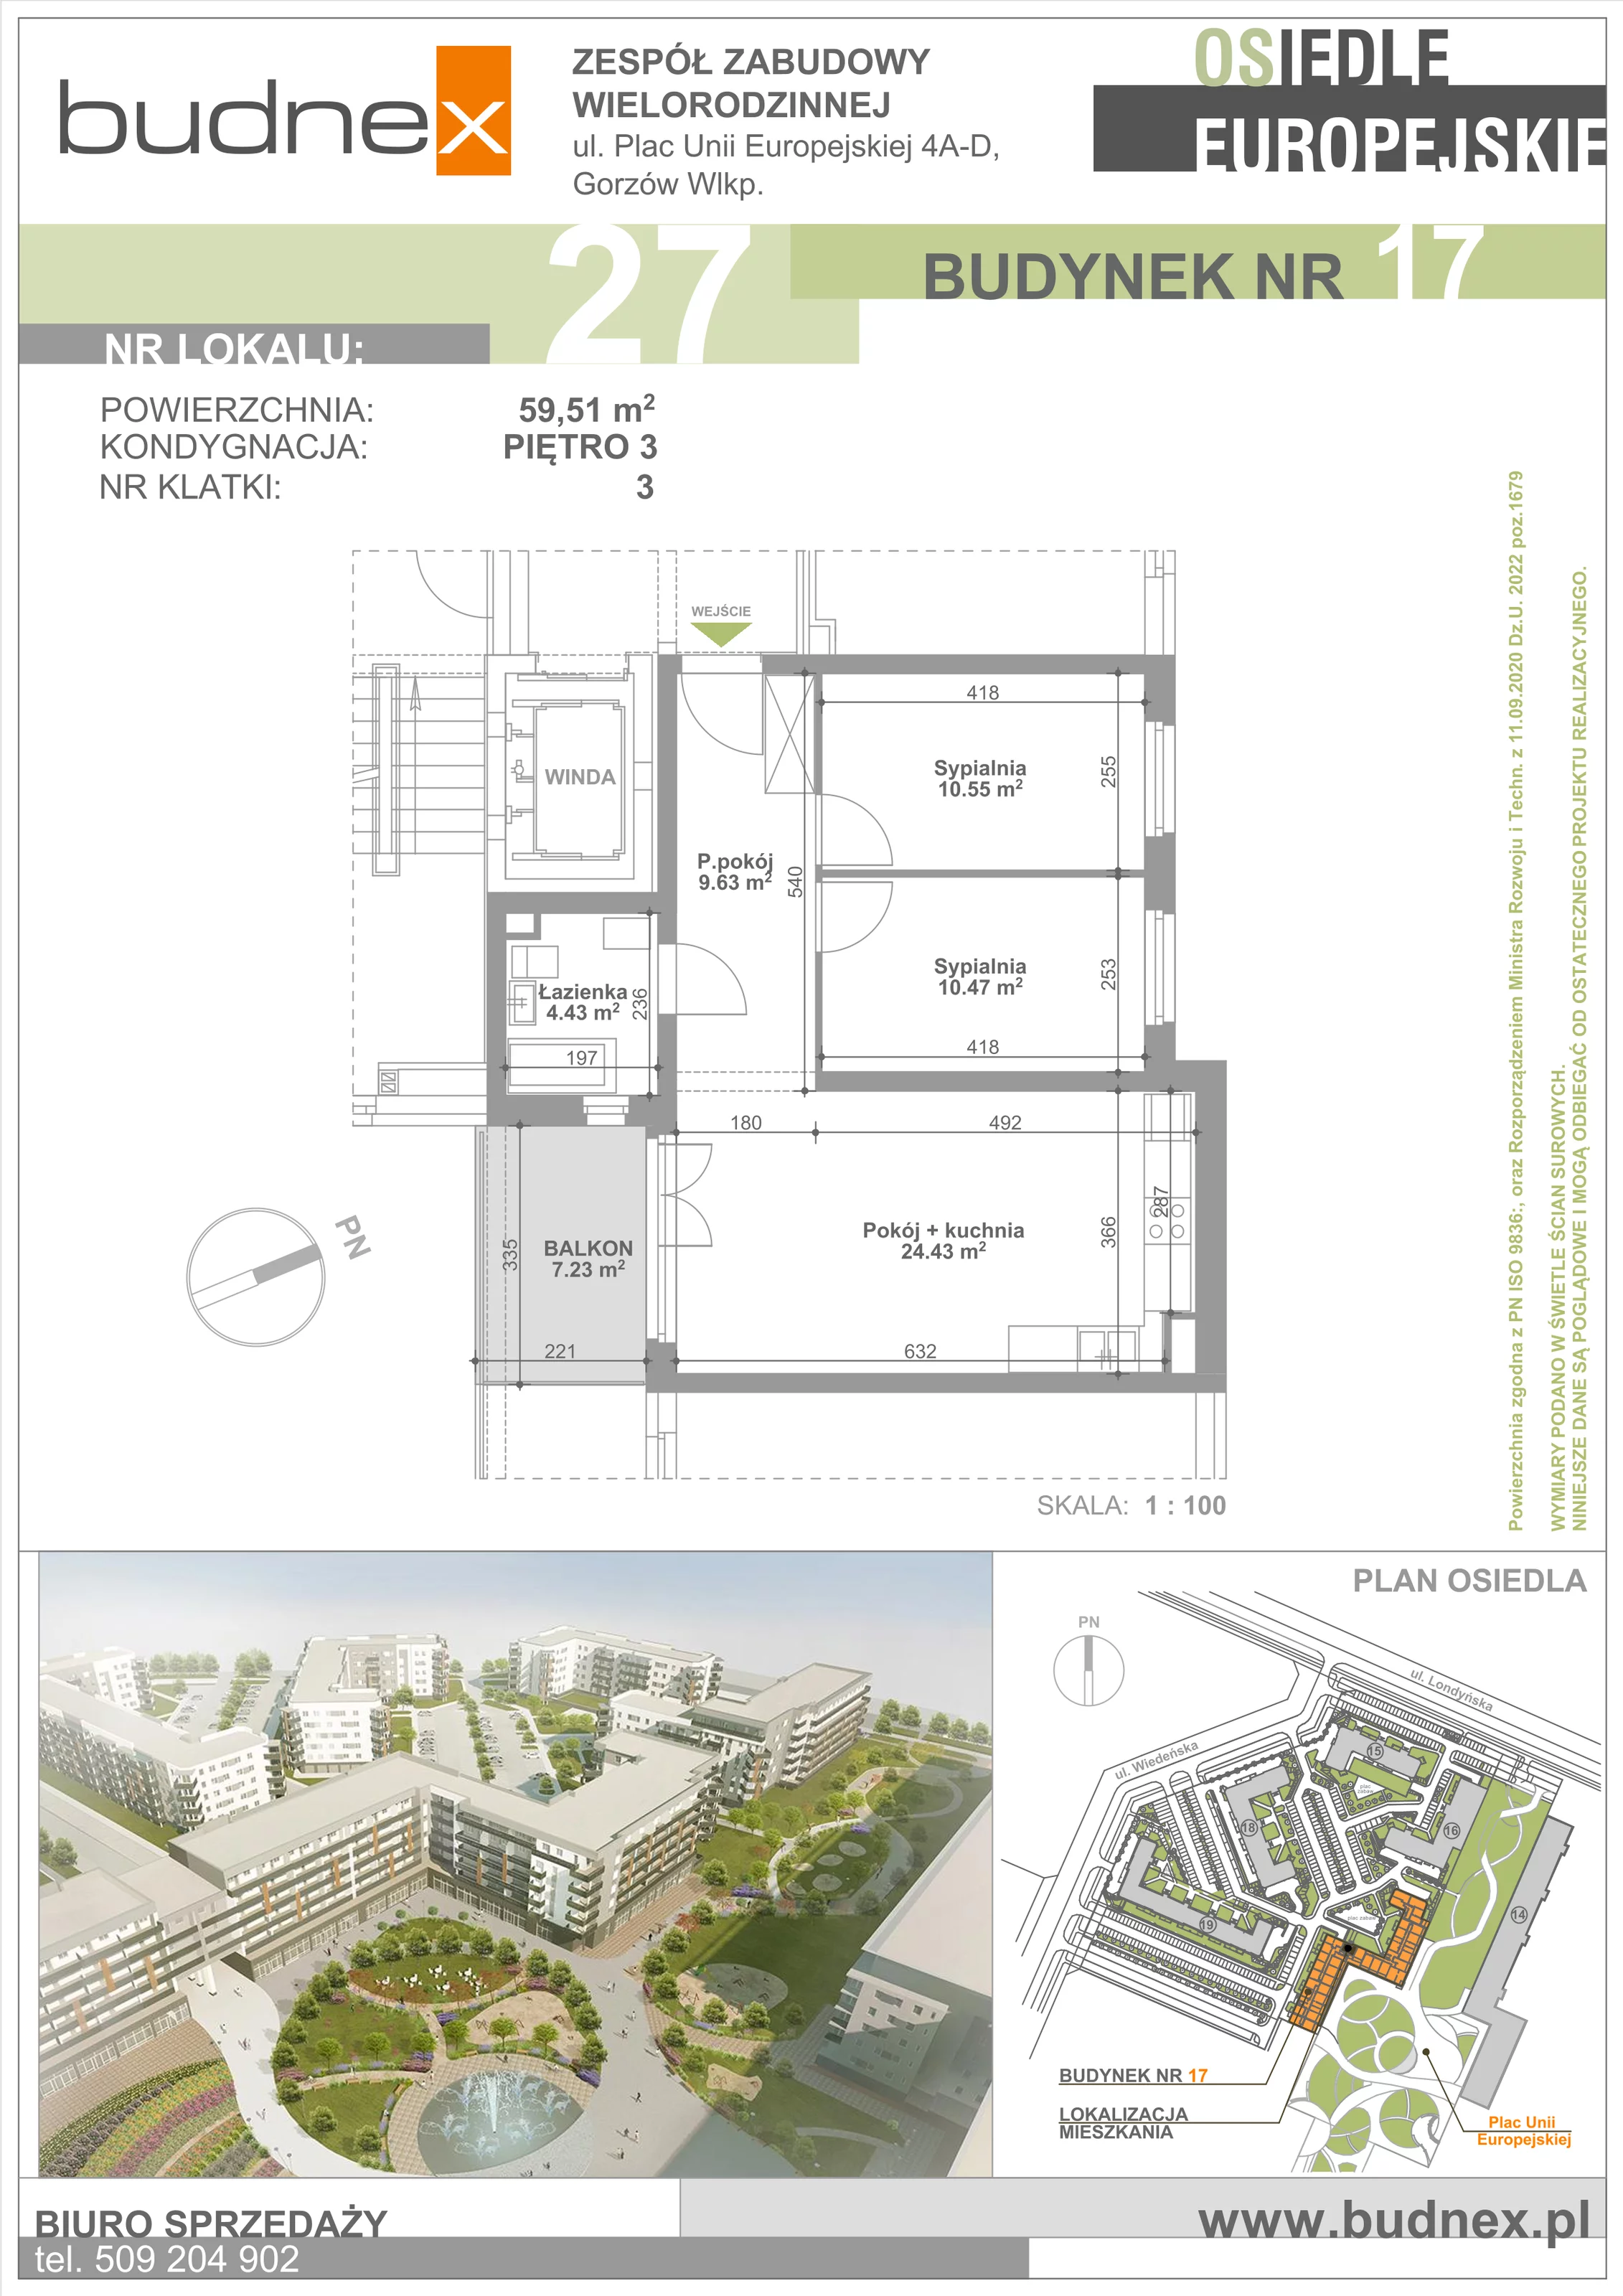 Mieszkanie 59,51 m², piętro 3, oferta nr 3/M27, Osiedle Europejskie - Budynek 17, Gorzów Wielkopolski, Plac Unii Europejskiej 4A-D